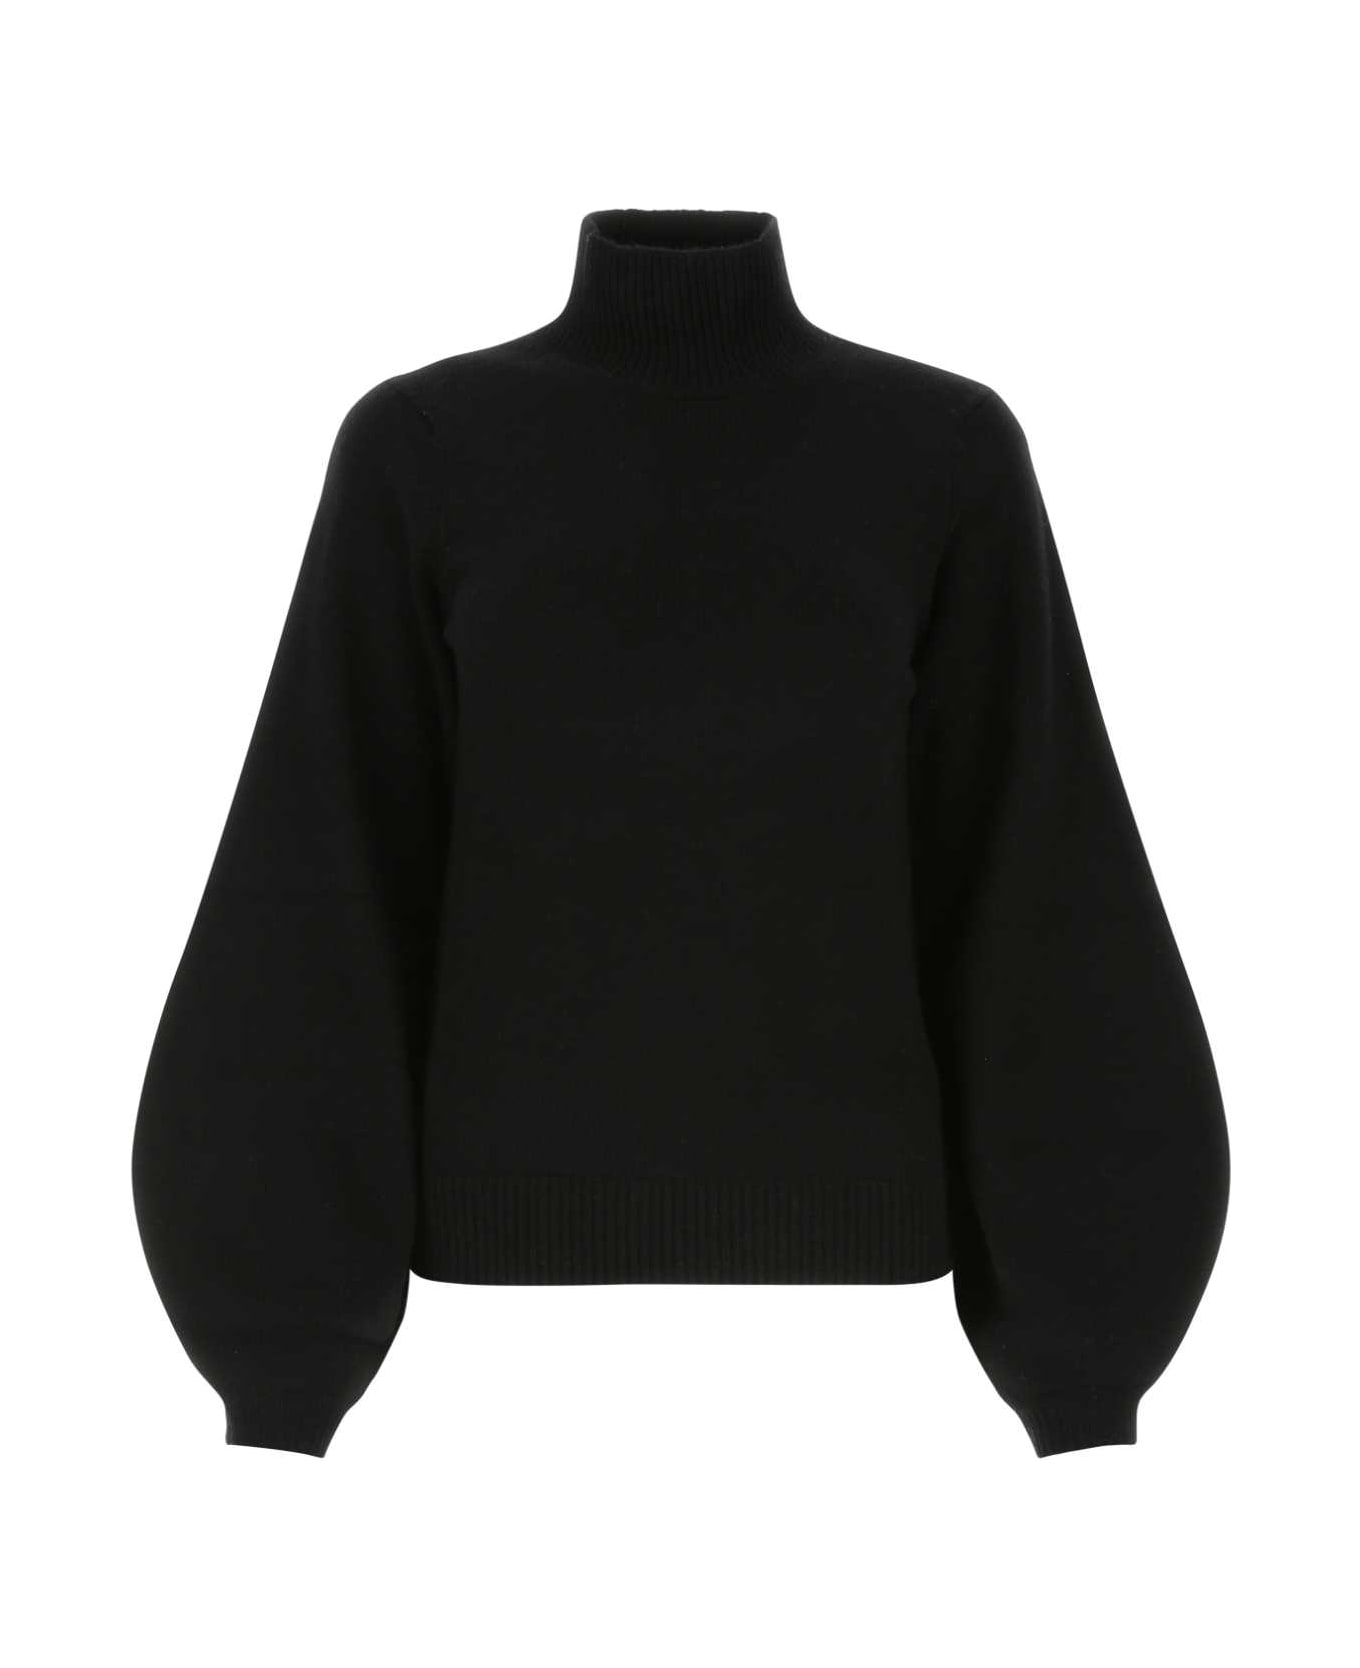 Chloé Black Cashmere Sweater - 001 ニットウェア